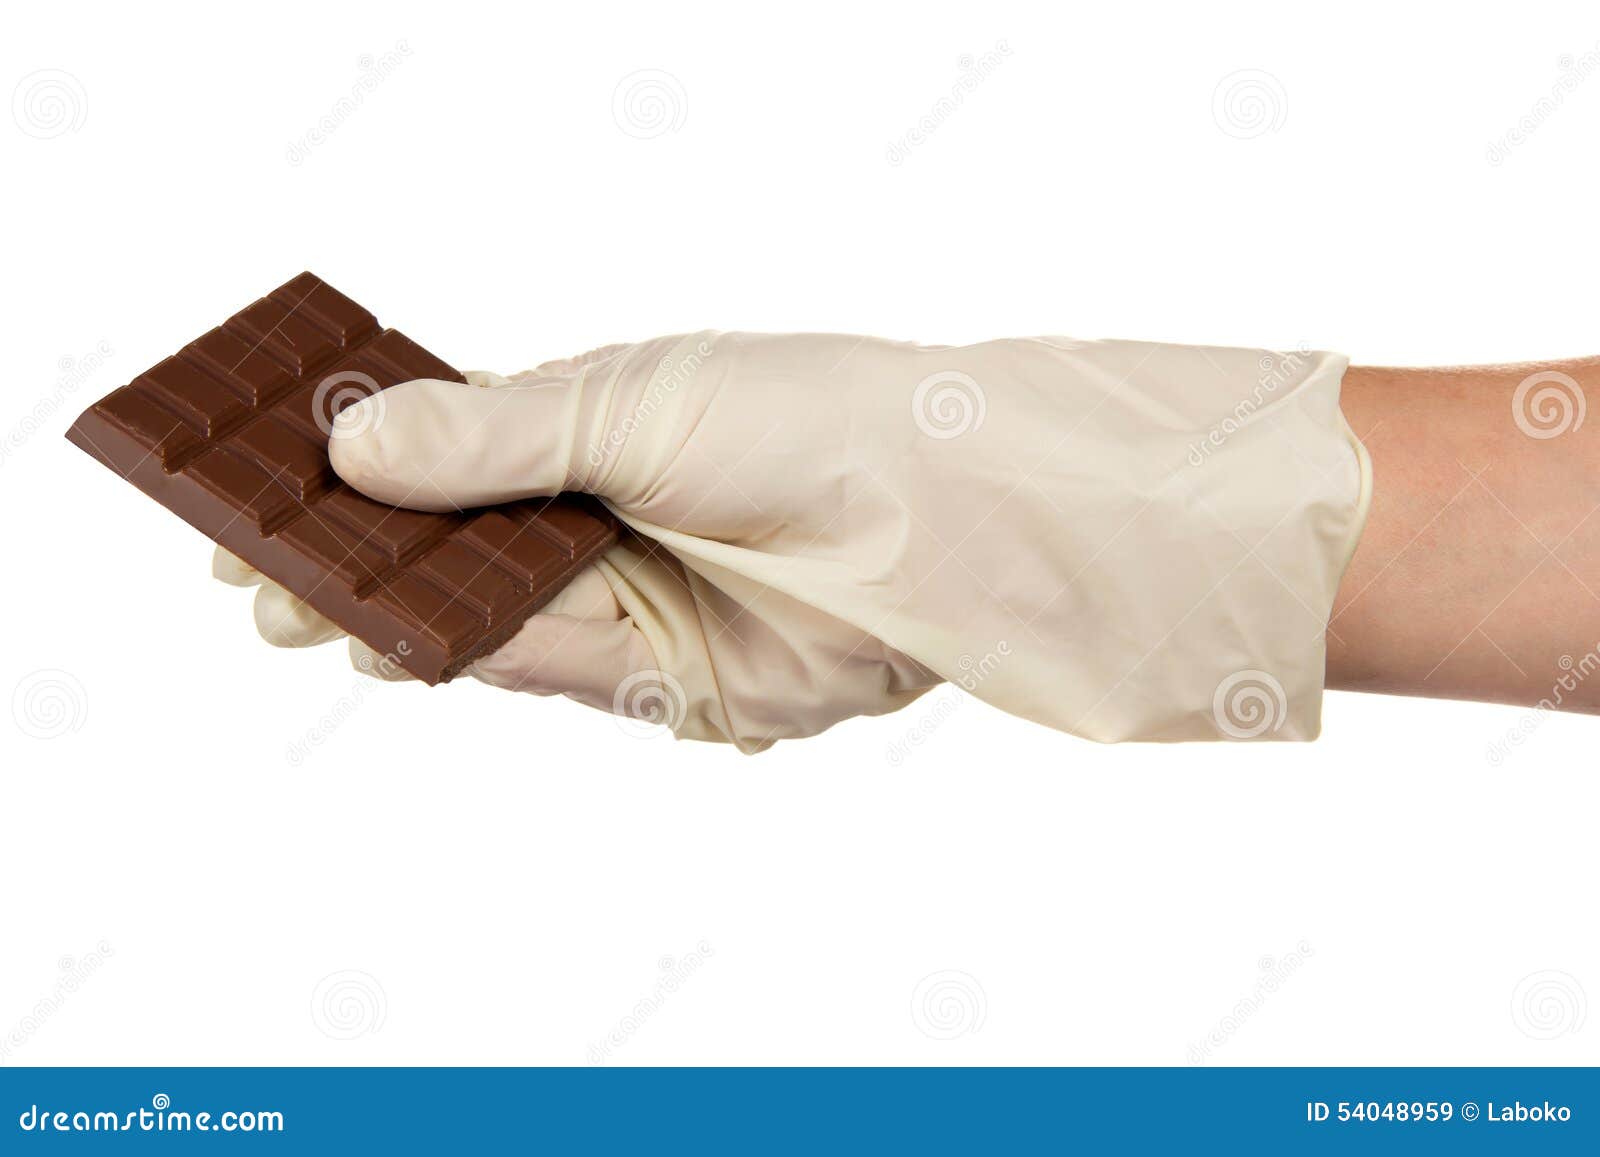 Дядя тянет руку в руке шоколадка. Шоколадка в руке. Кондитер с шоколадом в руках. Плитка шоколада в руке референс.